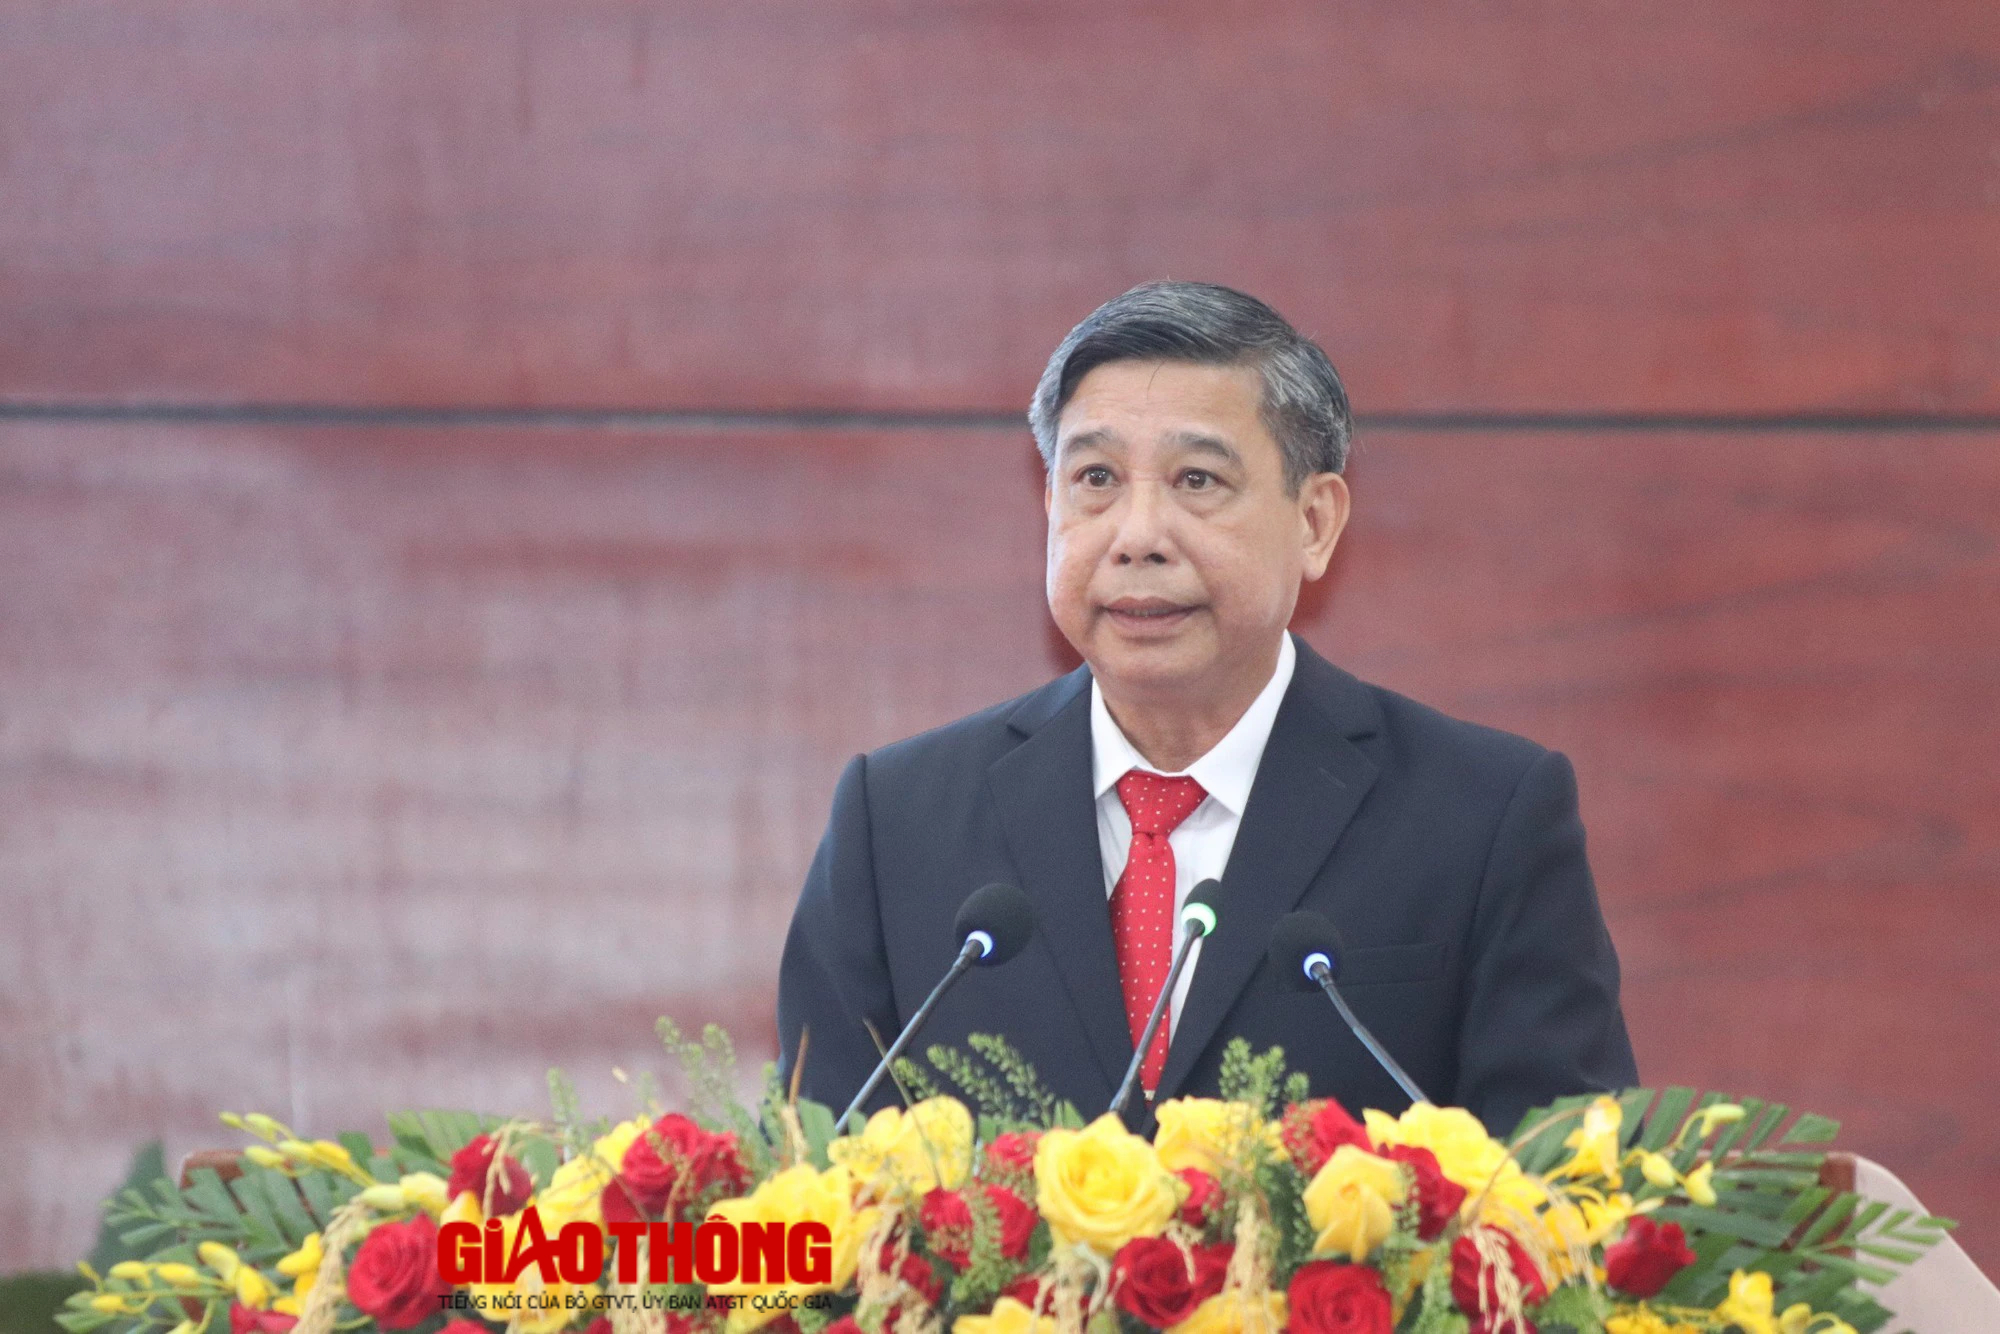 Phó Thủ tướng Chính phủ: Hâu Giang ưu tiên giao thông đi trước mở đường - Ảnh 4.